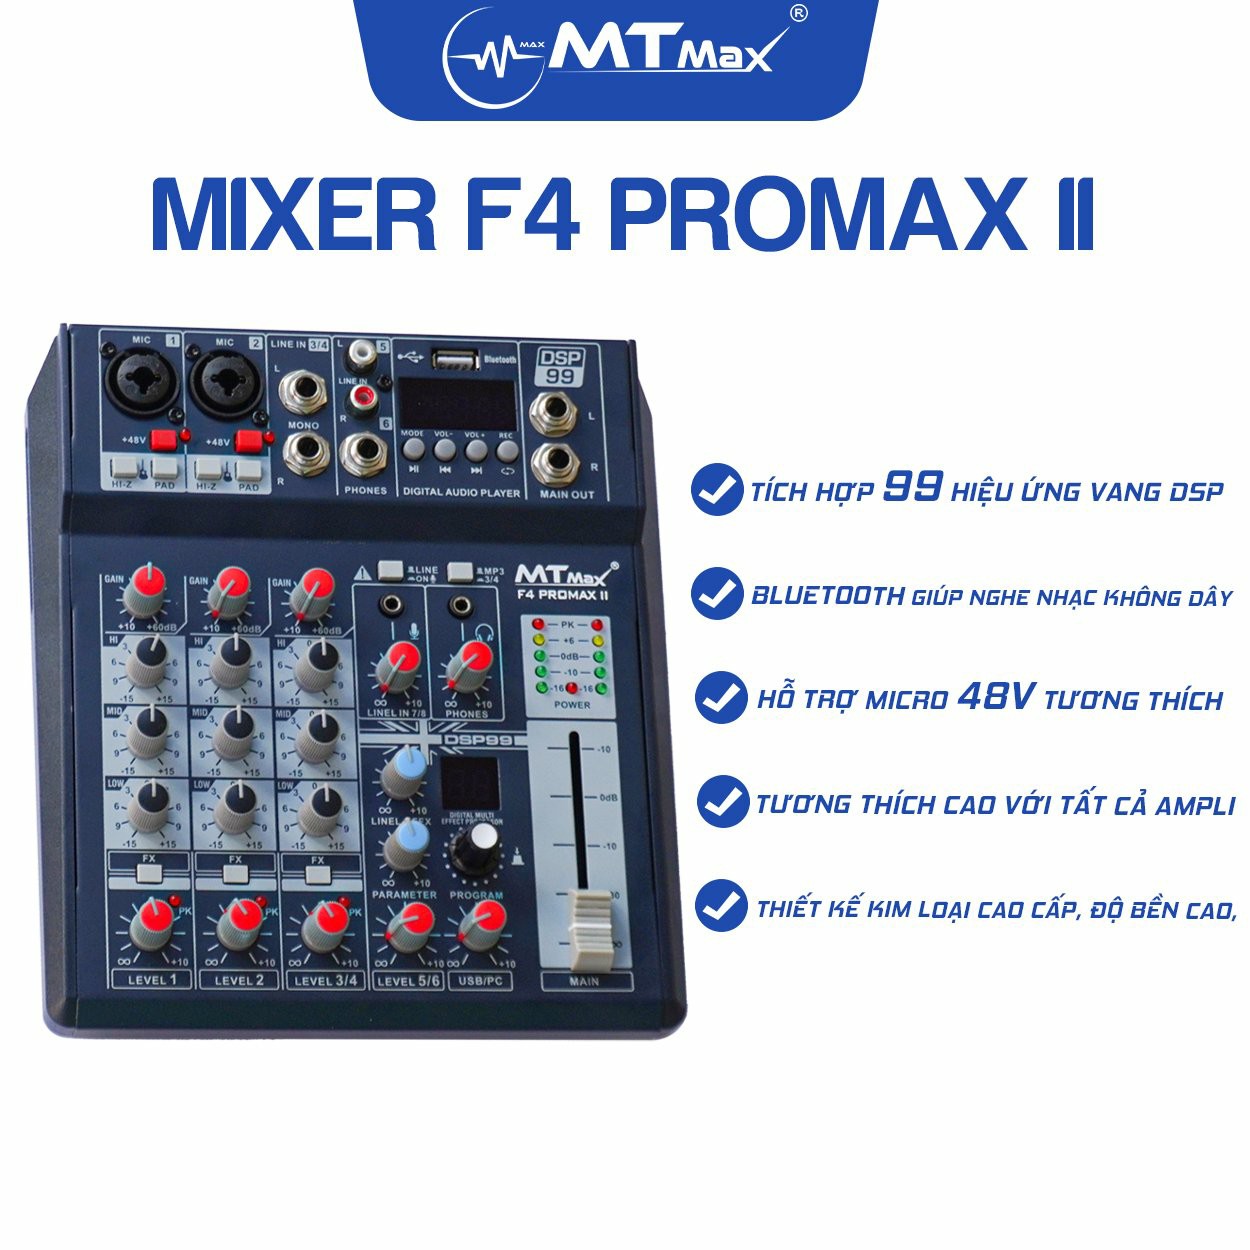 Combo thu âm, livestream Micro TakStar PC-K320, Mixer MTMax F4 ProMax II - Kèm full phụ kiện kẹp micro, màng lọc, tai nghe, dây canon, dây livestream, giá đỡ ĐT - Hỗ trợ thu âm, karaoke online chuyên nghiệp - Hàng nhập khẩu